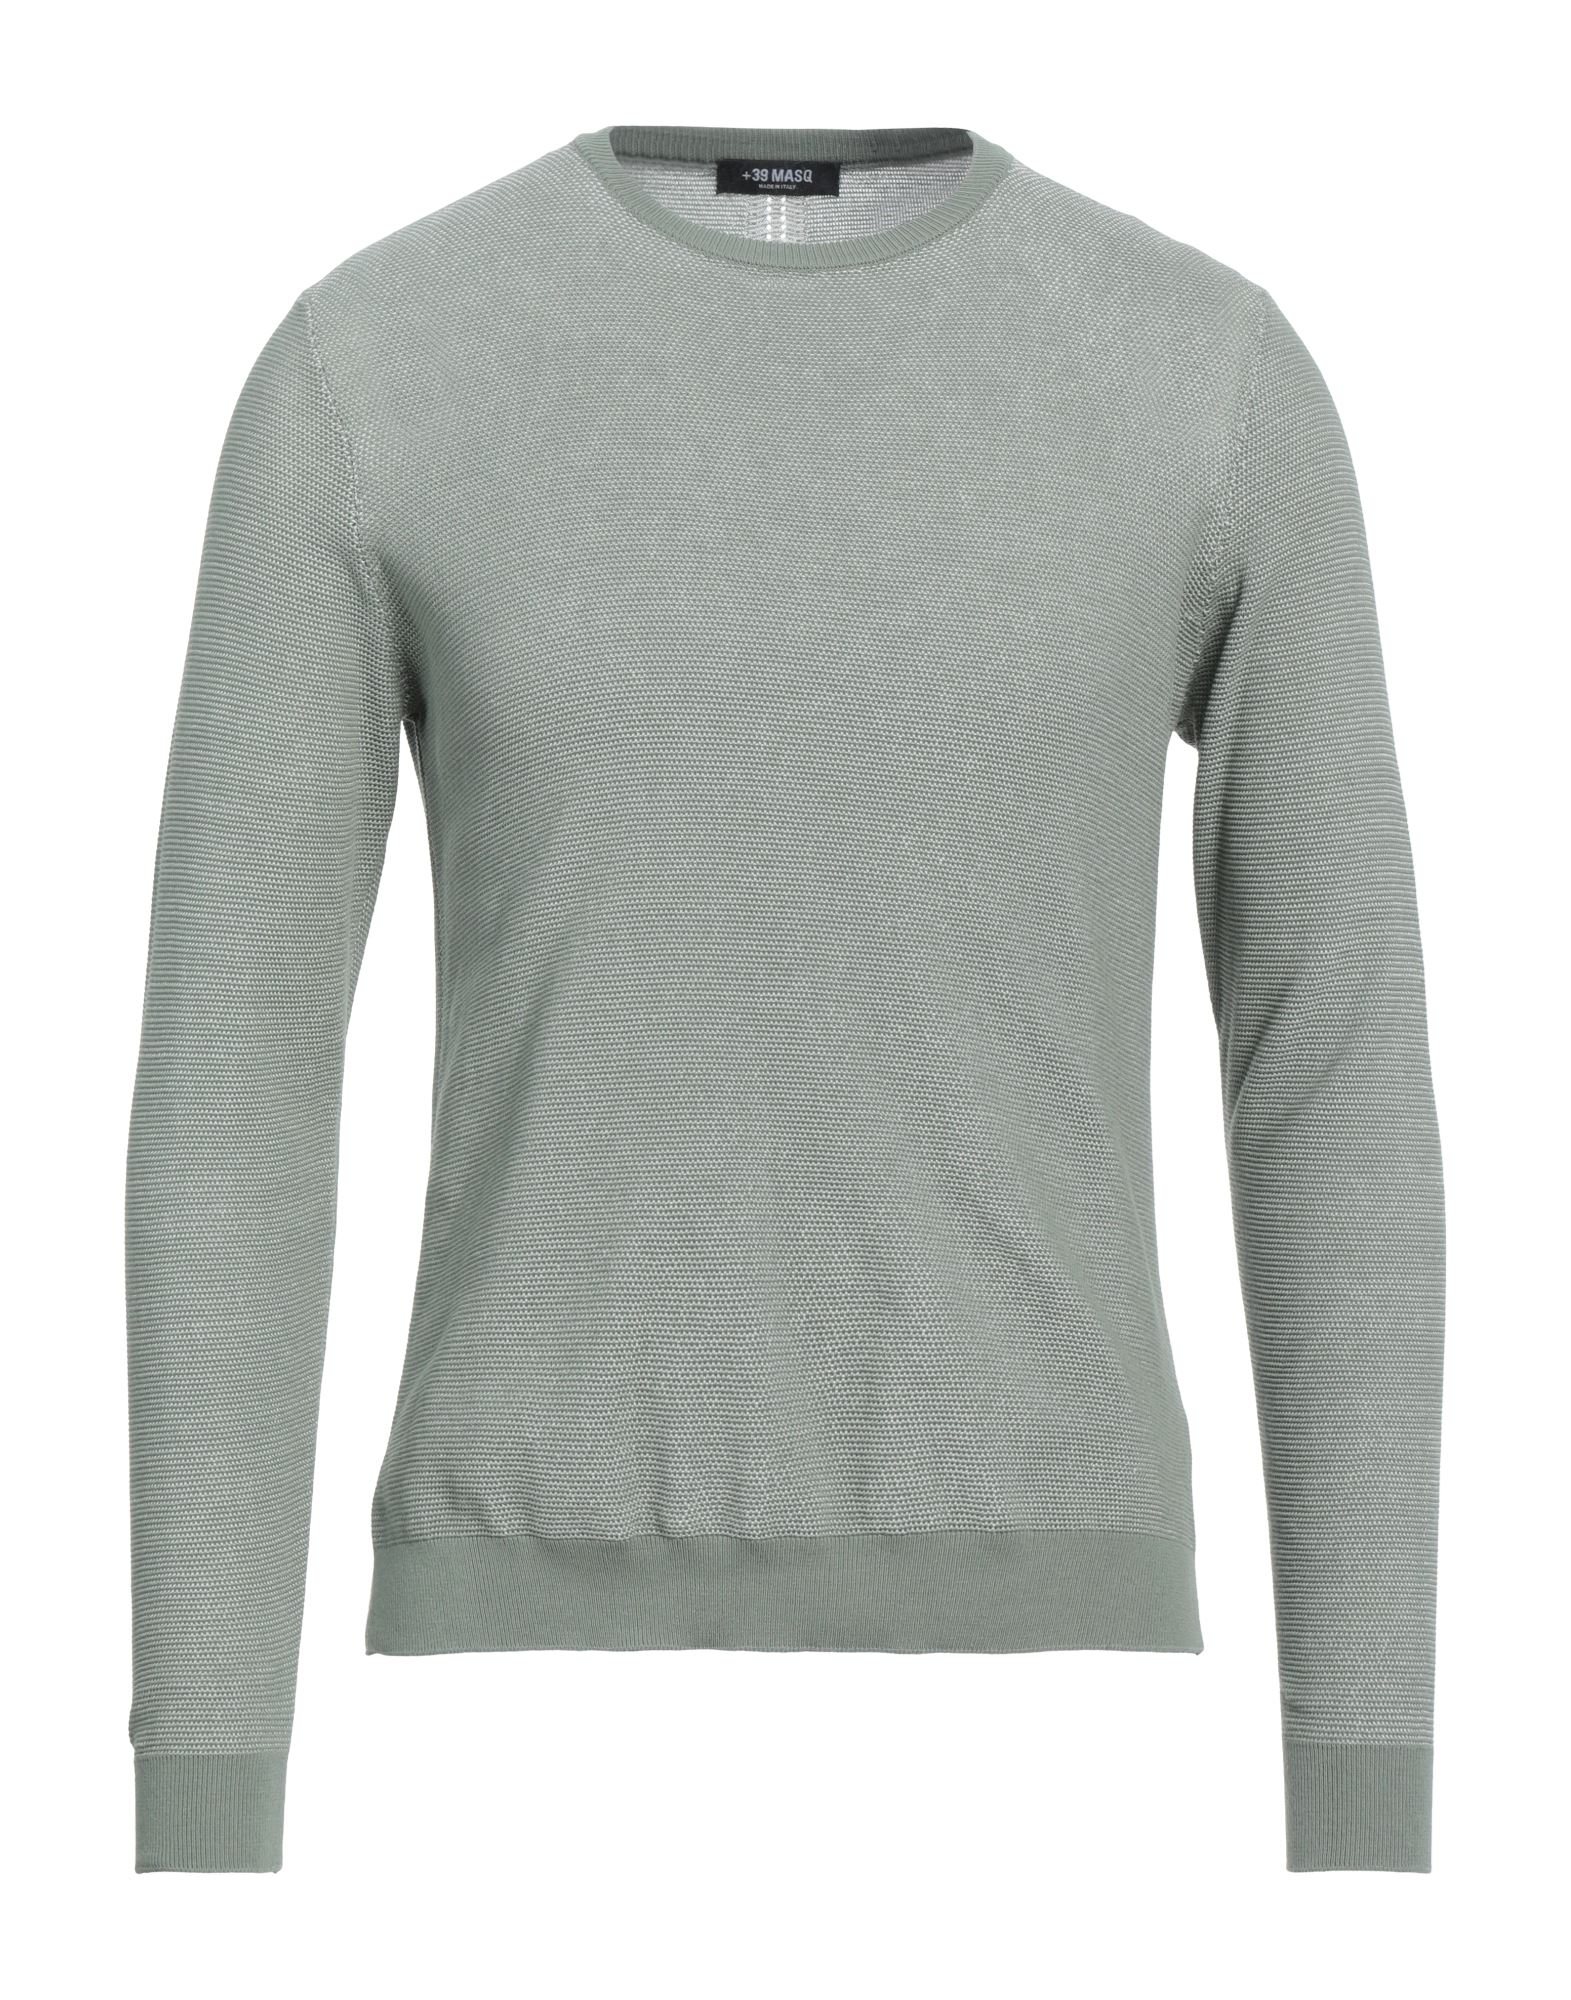 +39 Masq Man Sweater Sage Green Size Xxl Cotton